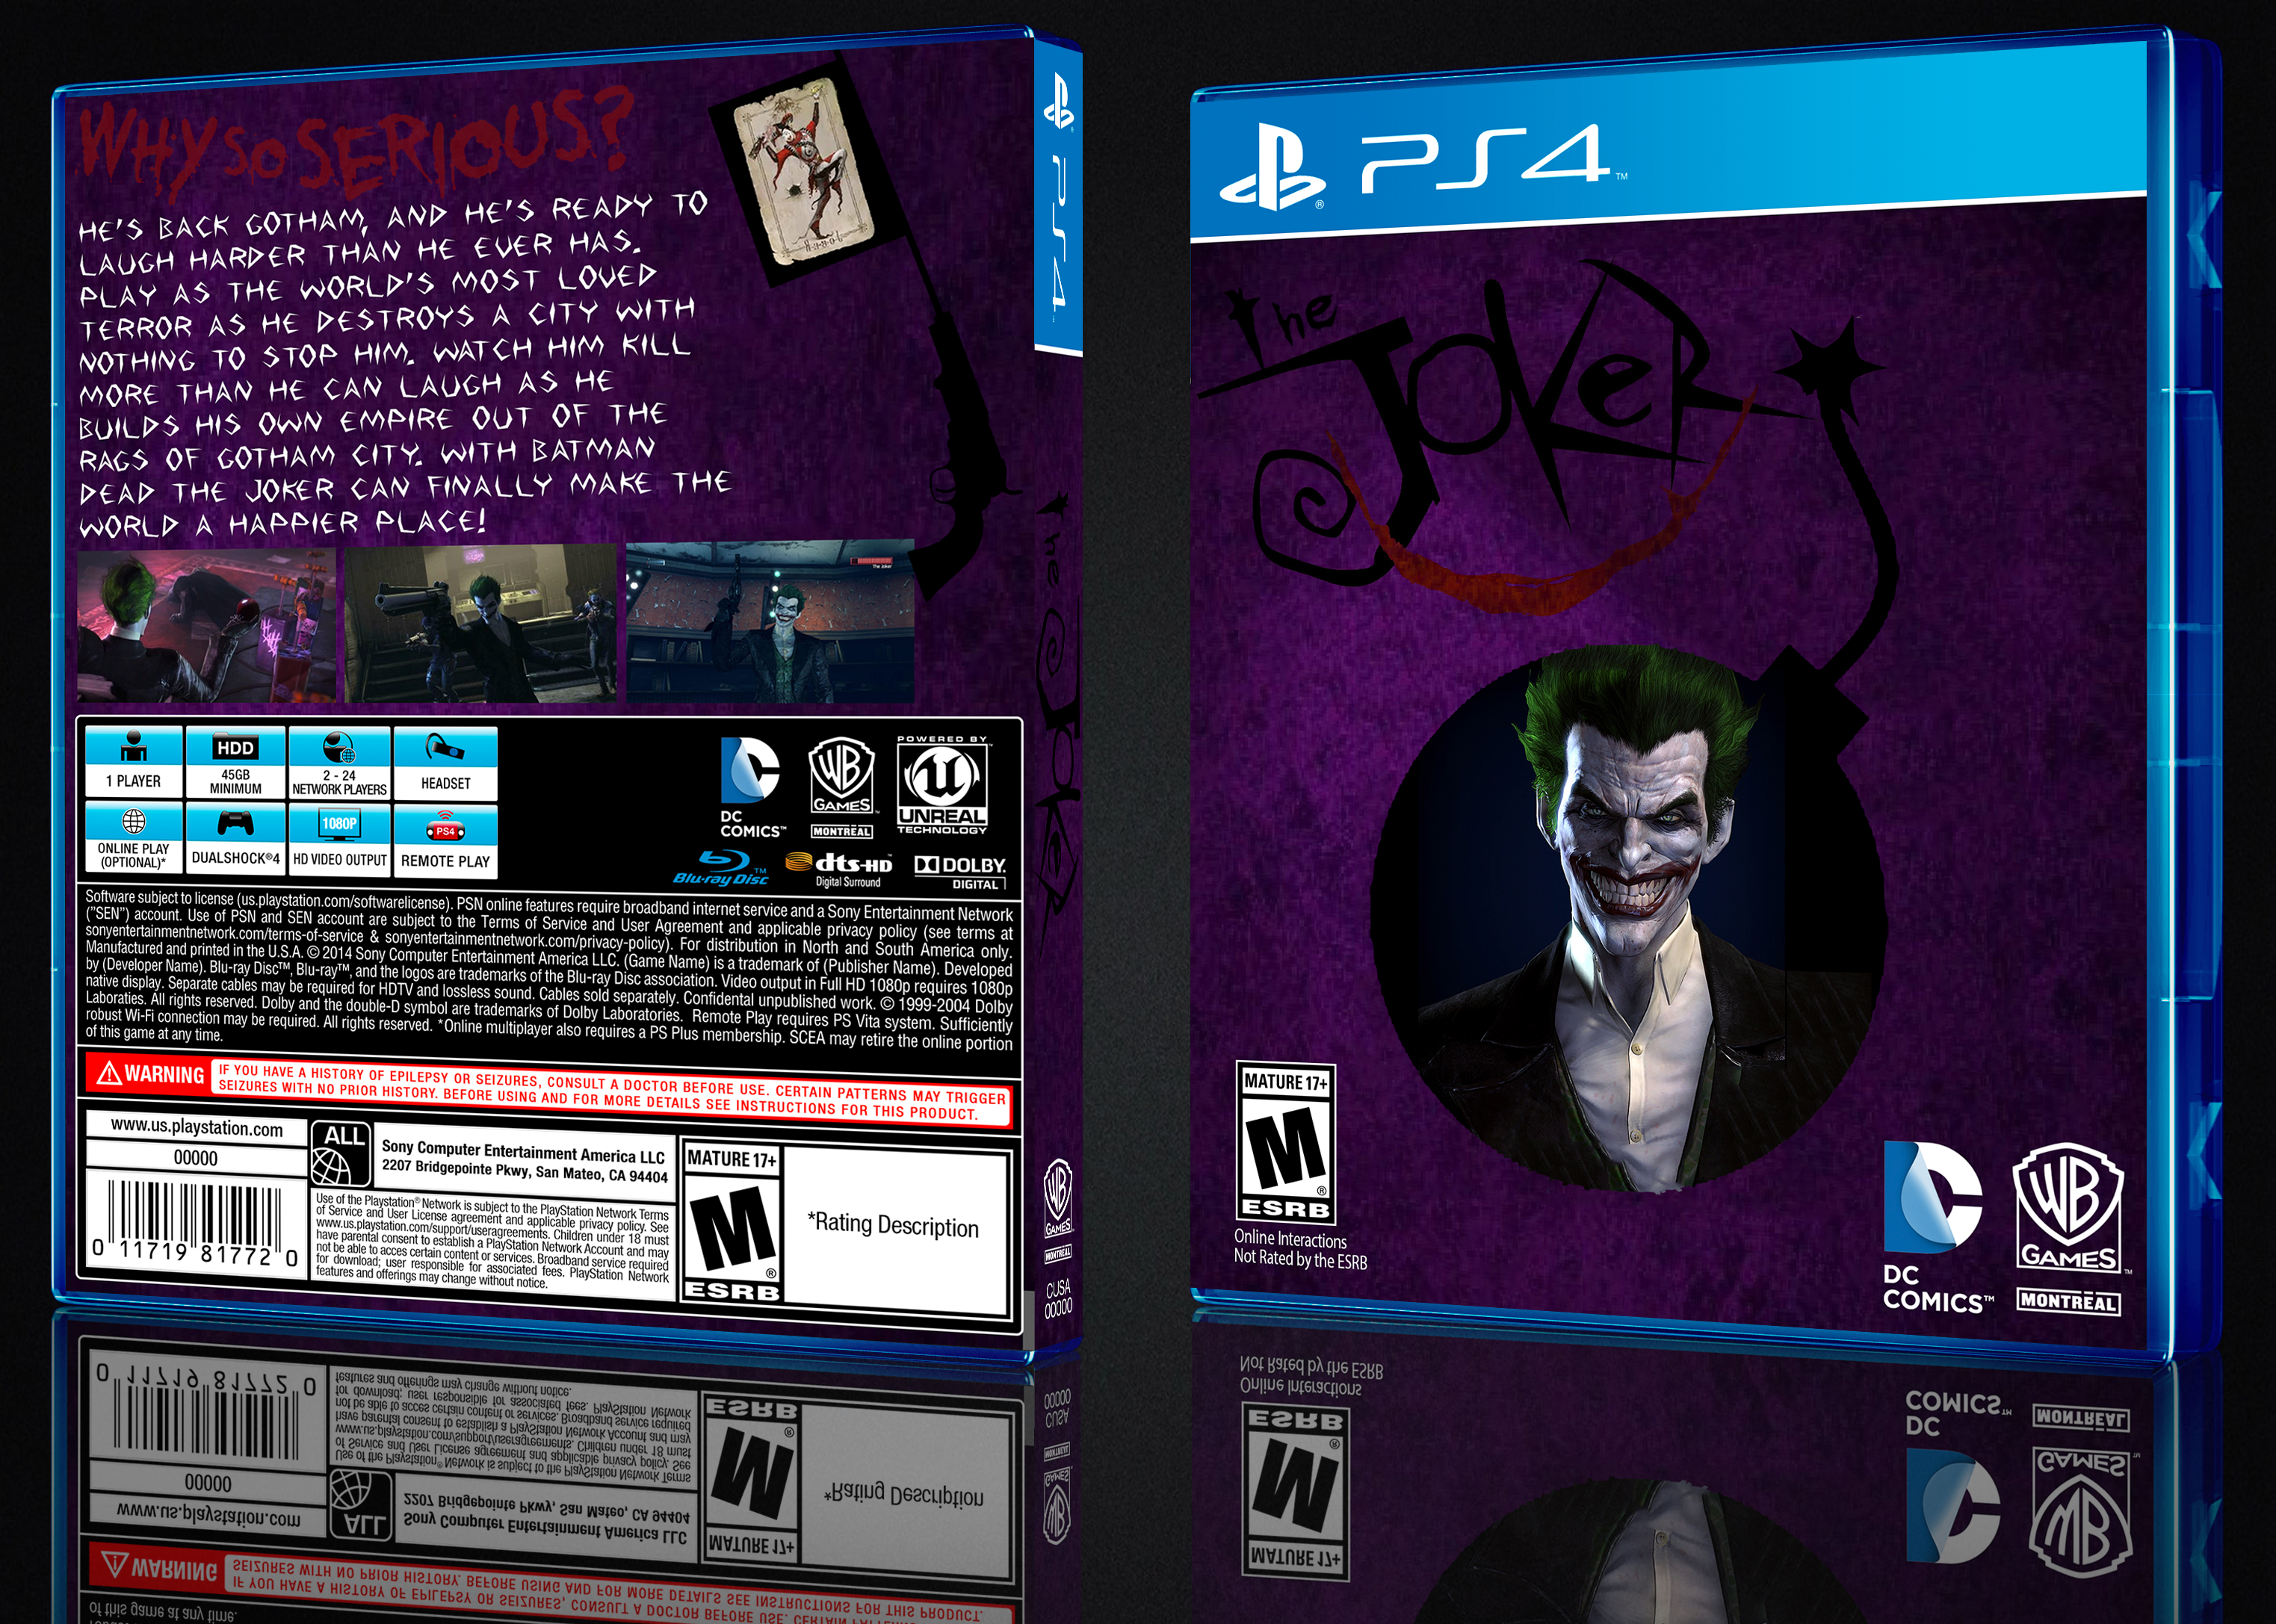 The Joker box cover